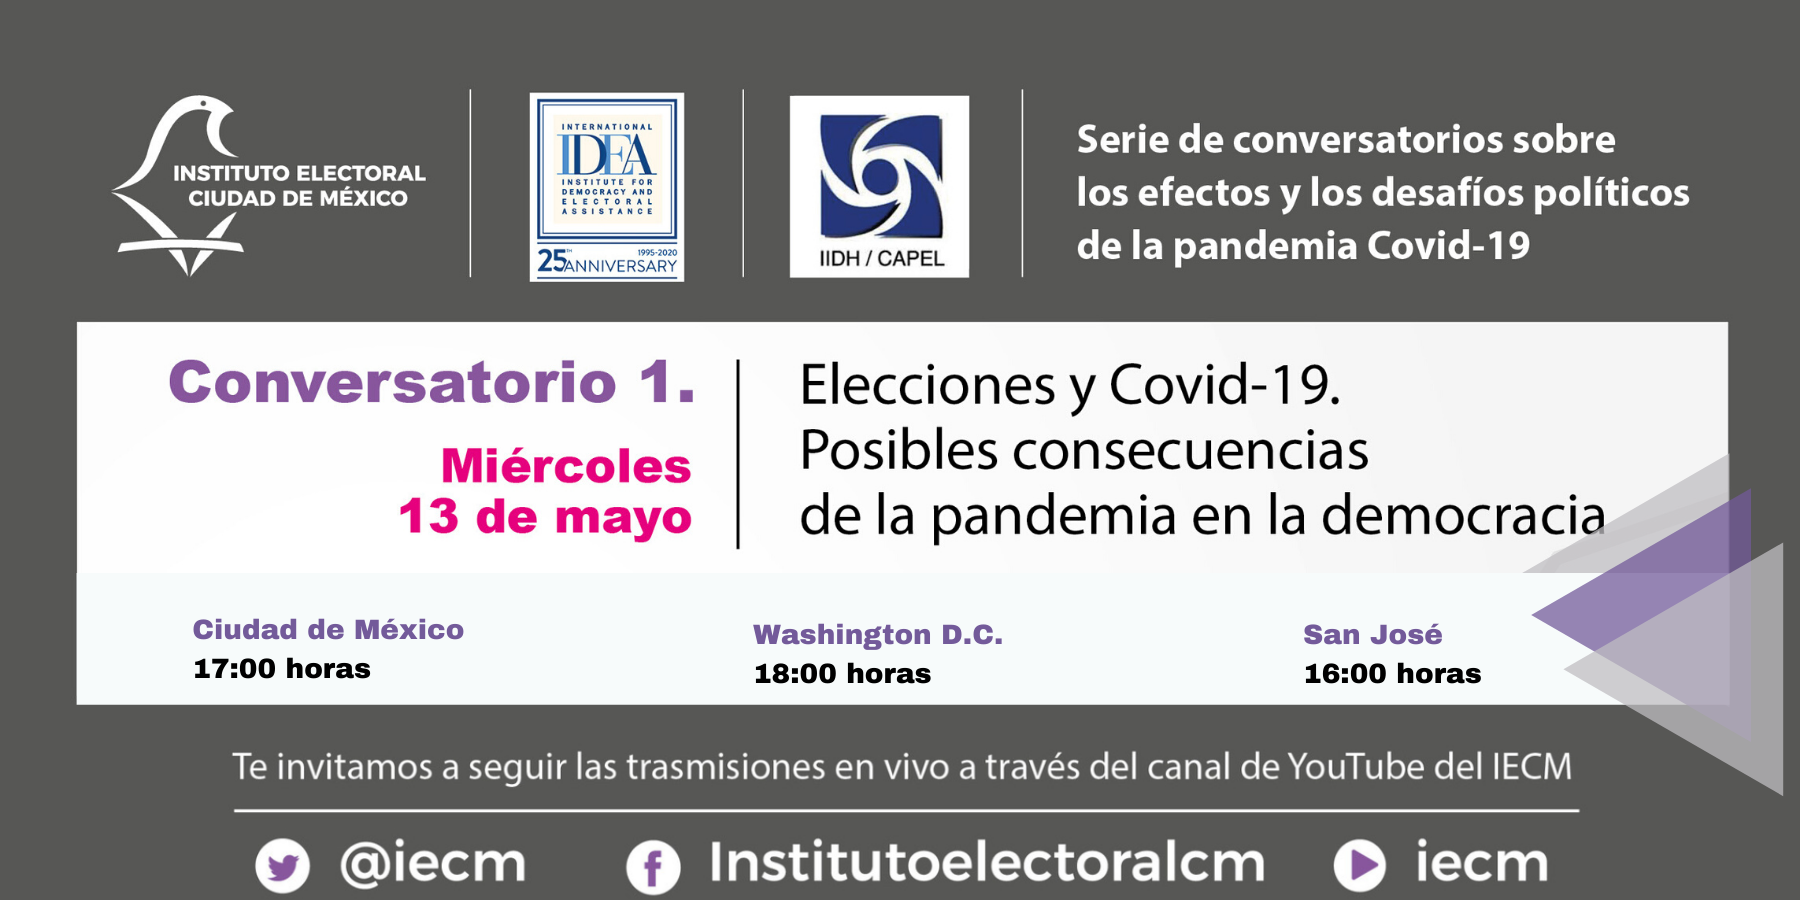 Conversatorio 1. Elecciones y COVID-19: Posibles consecuencias de la pandemia en la democracia